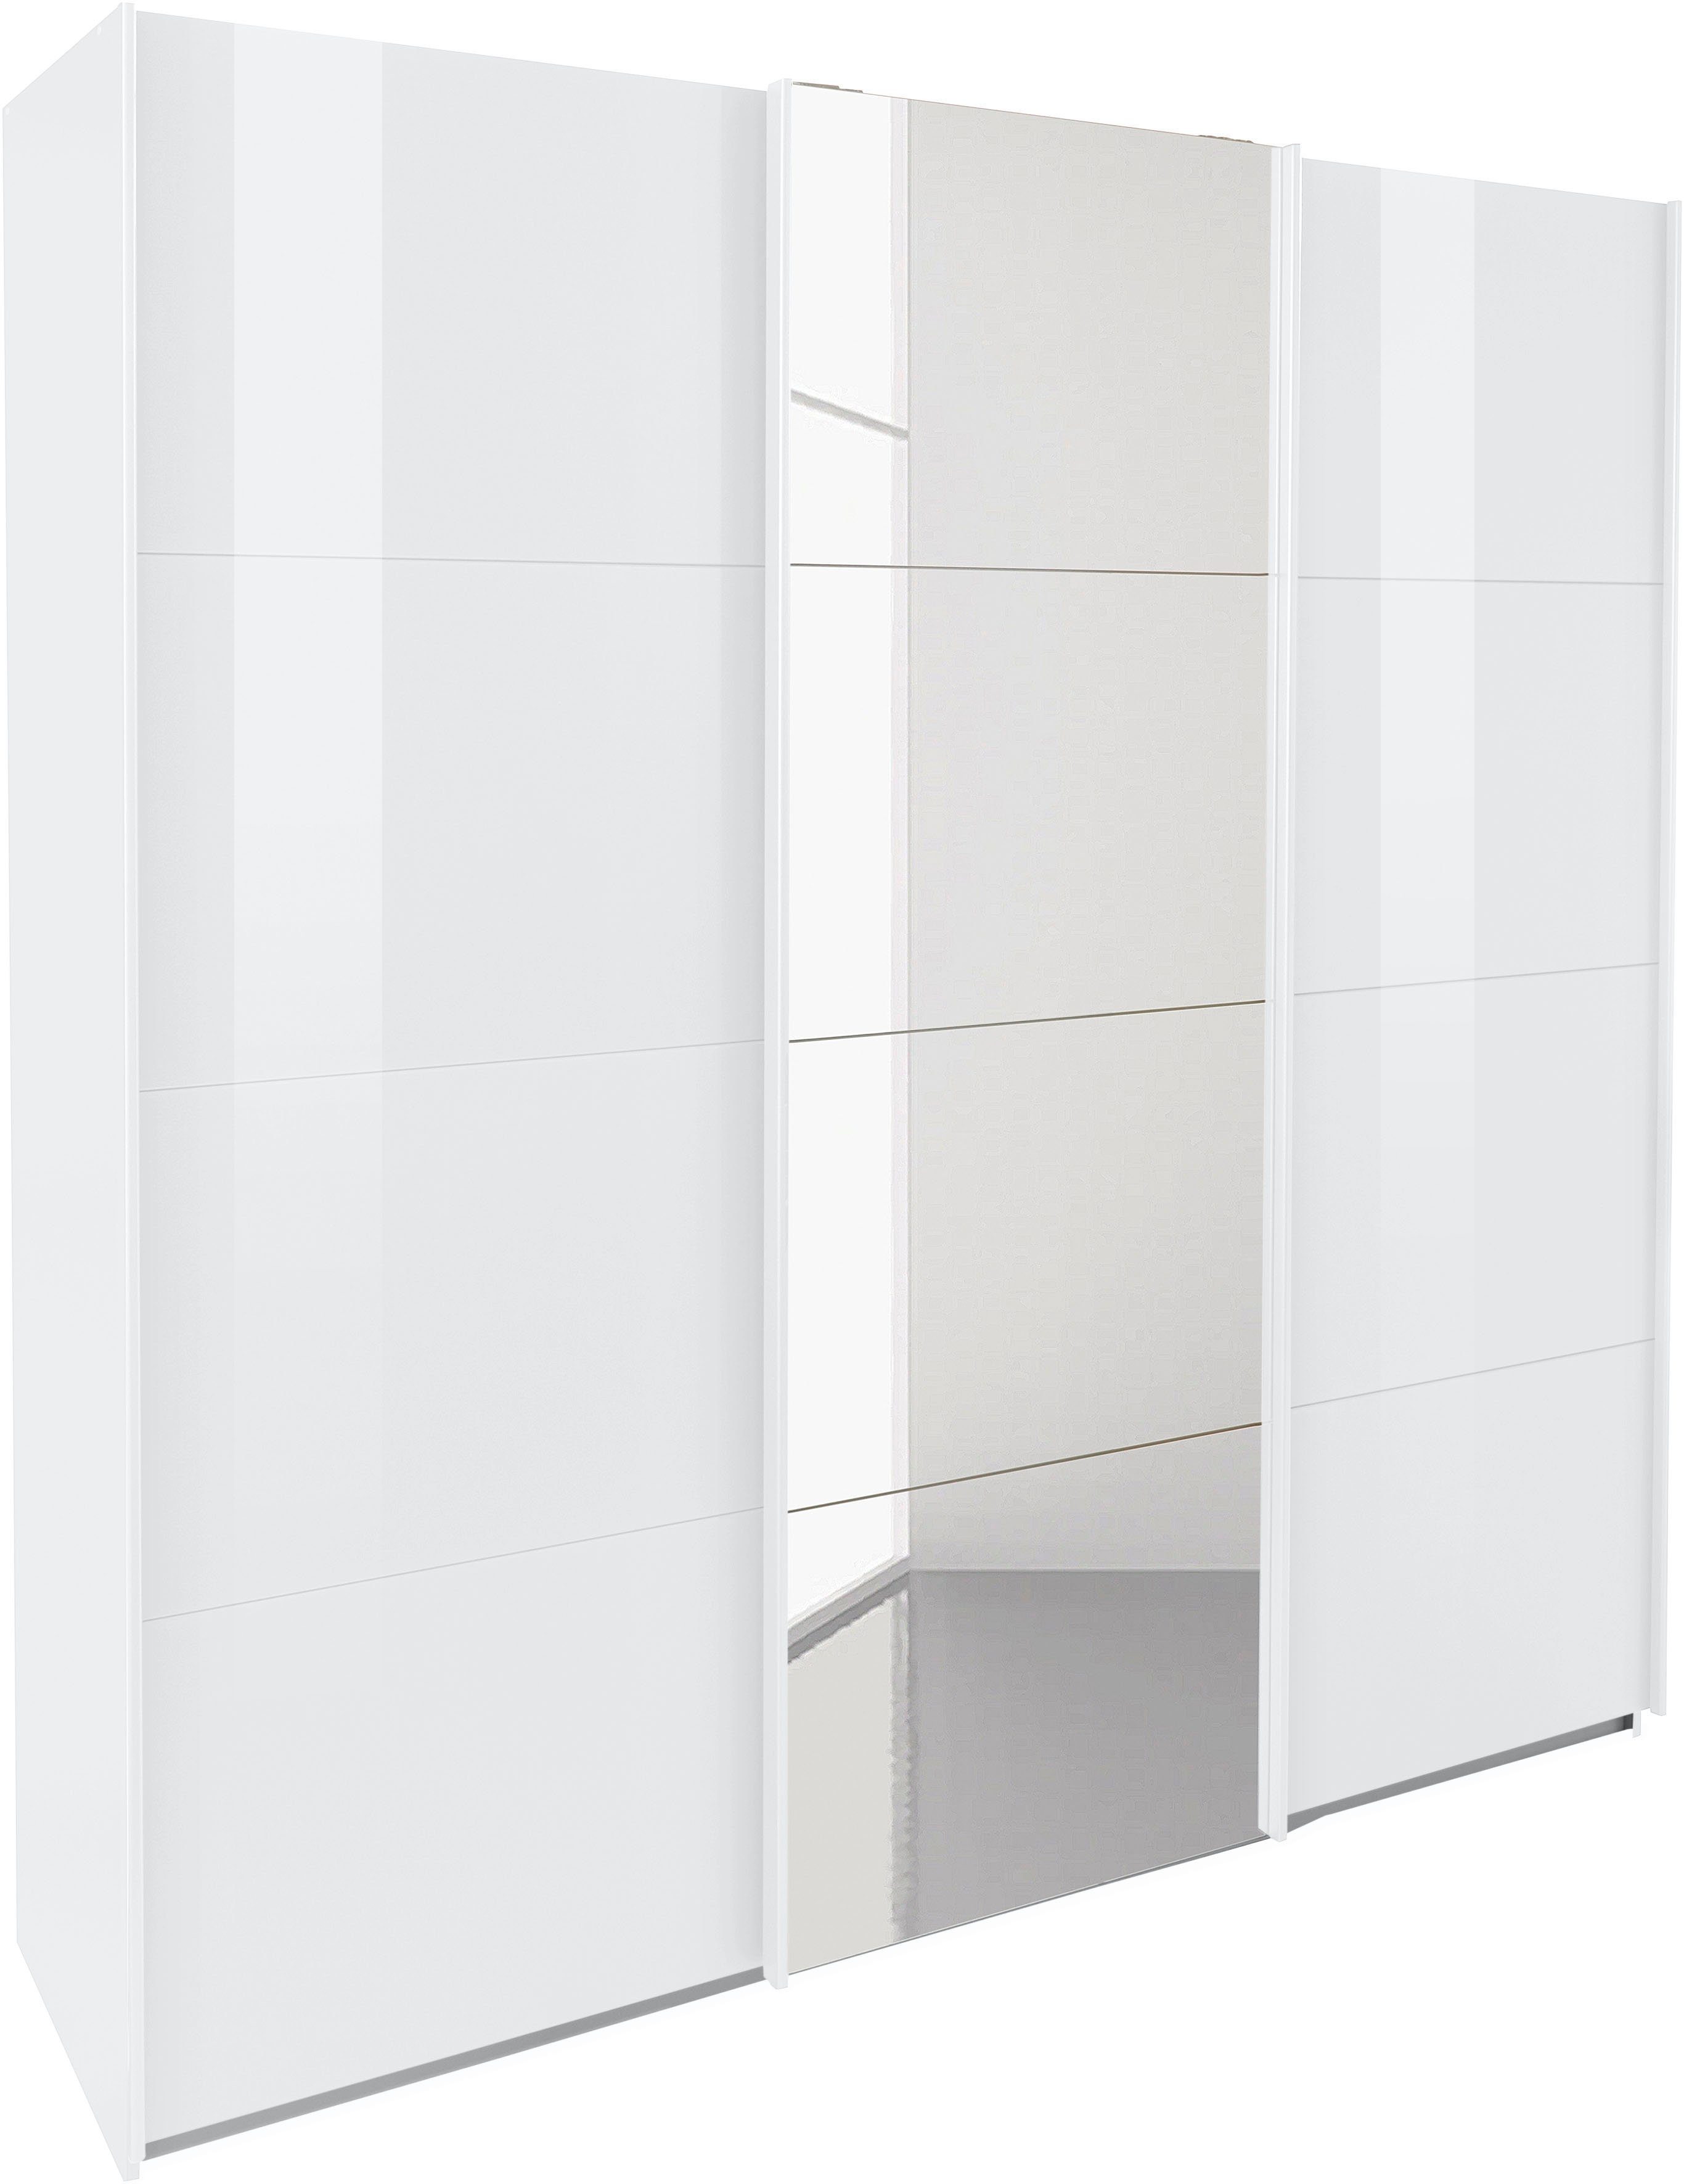 Schwebetürenschrank mit Oteli Wäscheeinteilung inkl. Innenschubladen sowie Weiß/Hochglanz 3 Böden Weiß rauch zusätzlichen